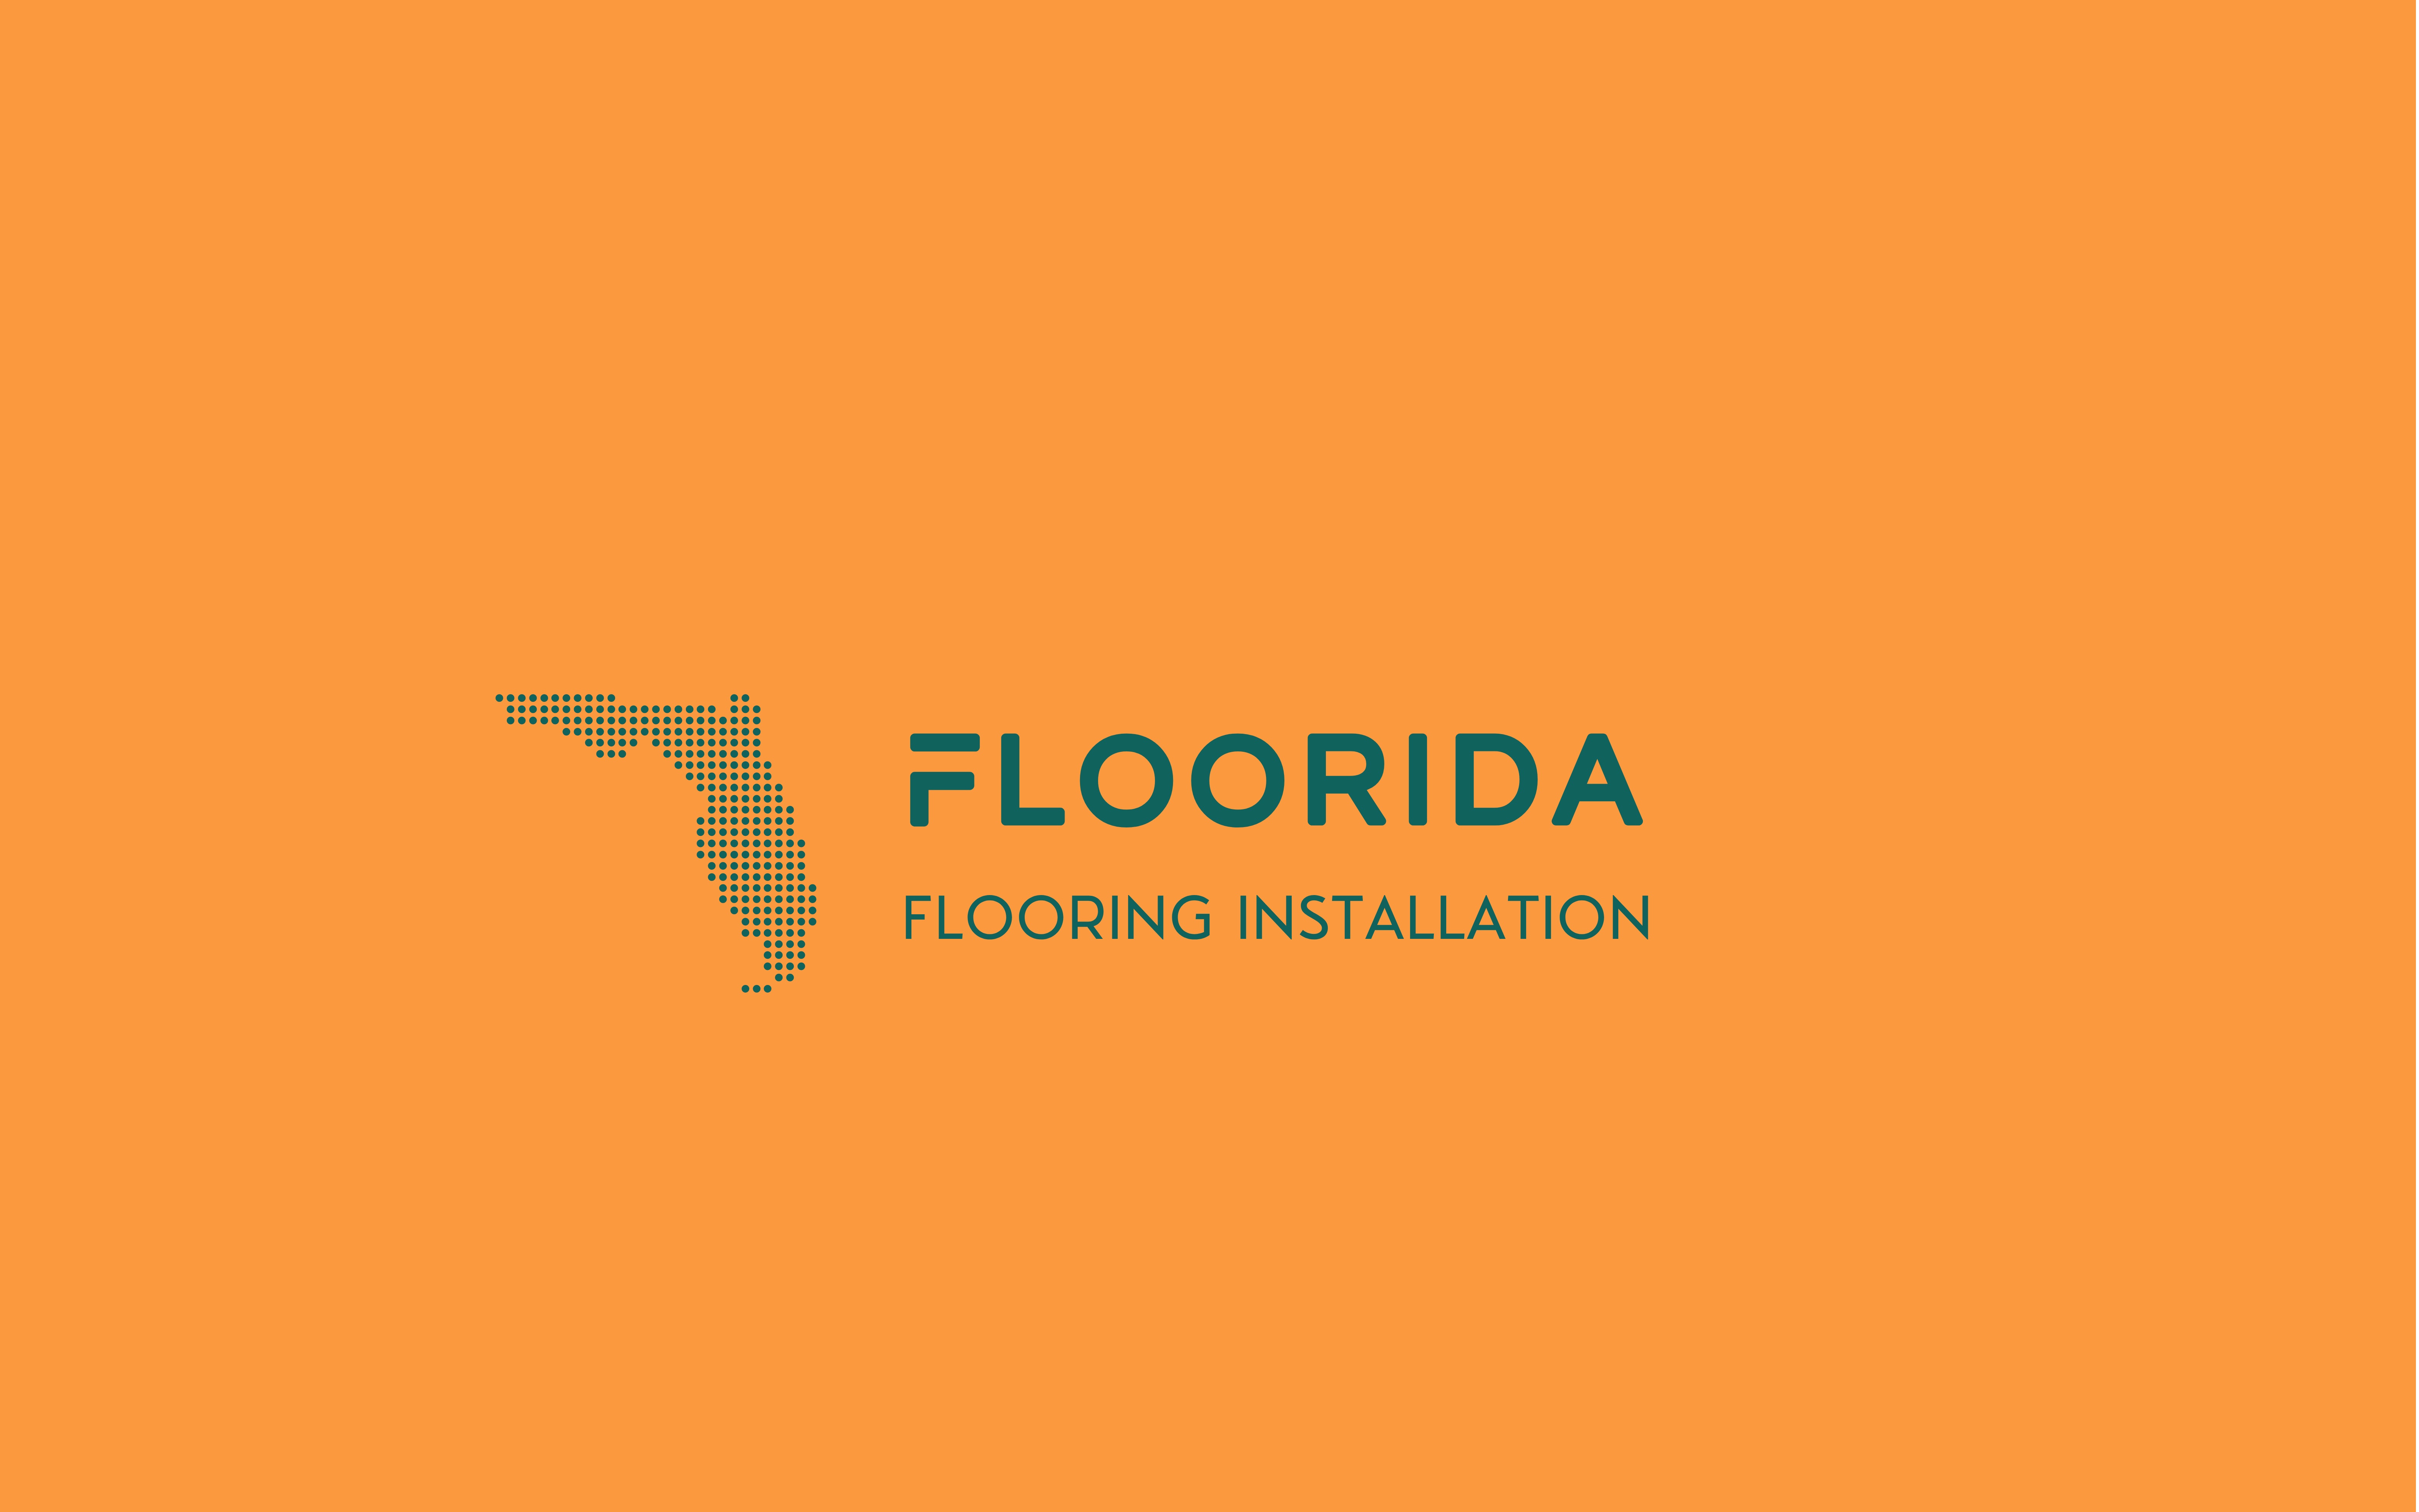 Floorida Flooring Installation